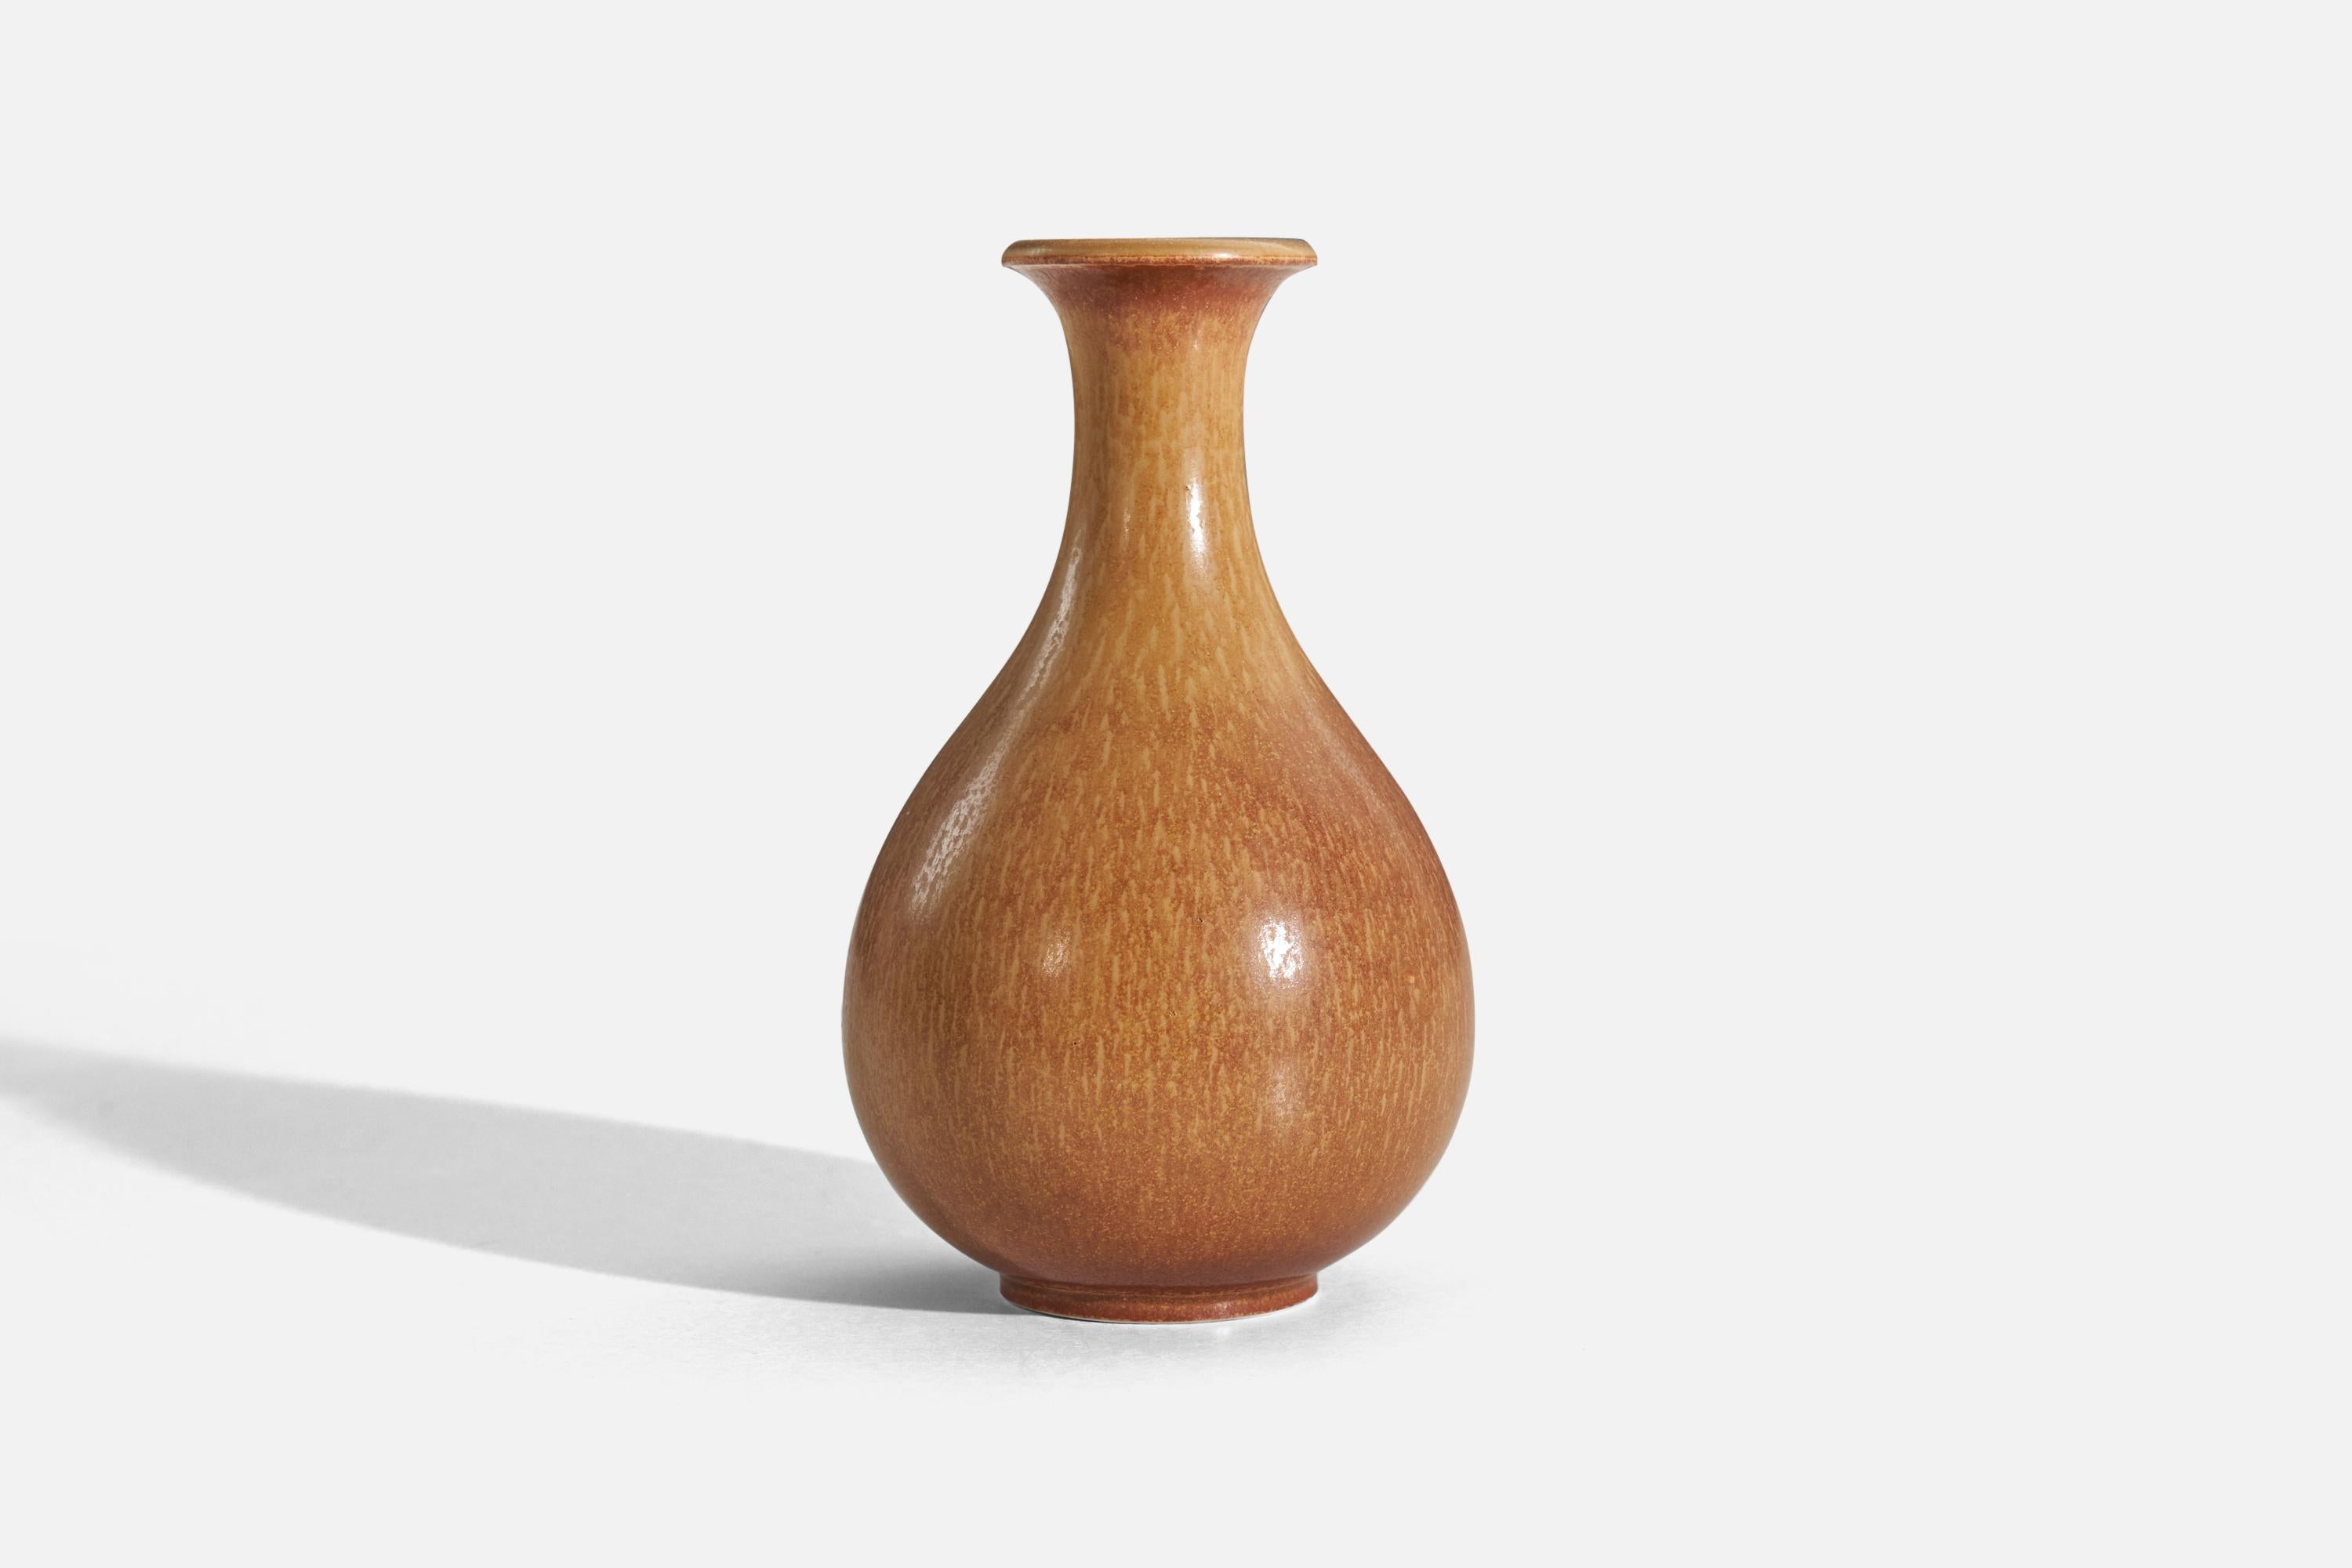 European Gunnar Nylund, Vase, Brown-Glazed Stoneware, Rörstand, Sweden, 1940s For Sale